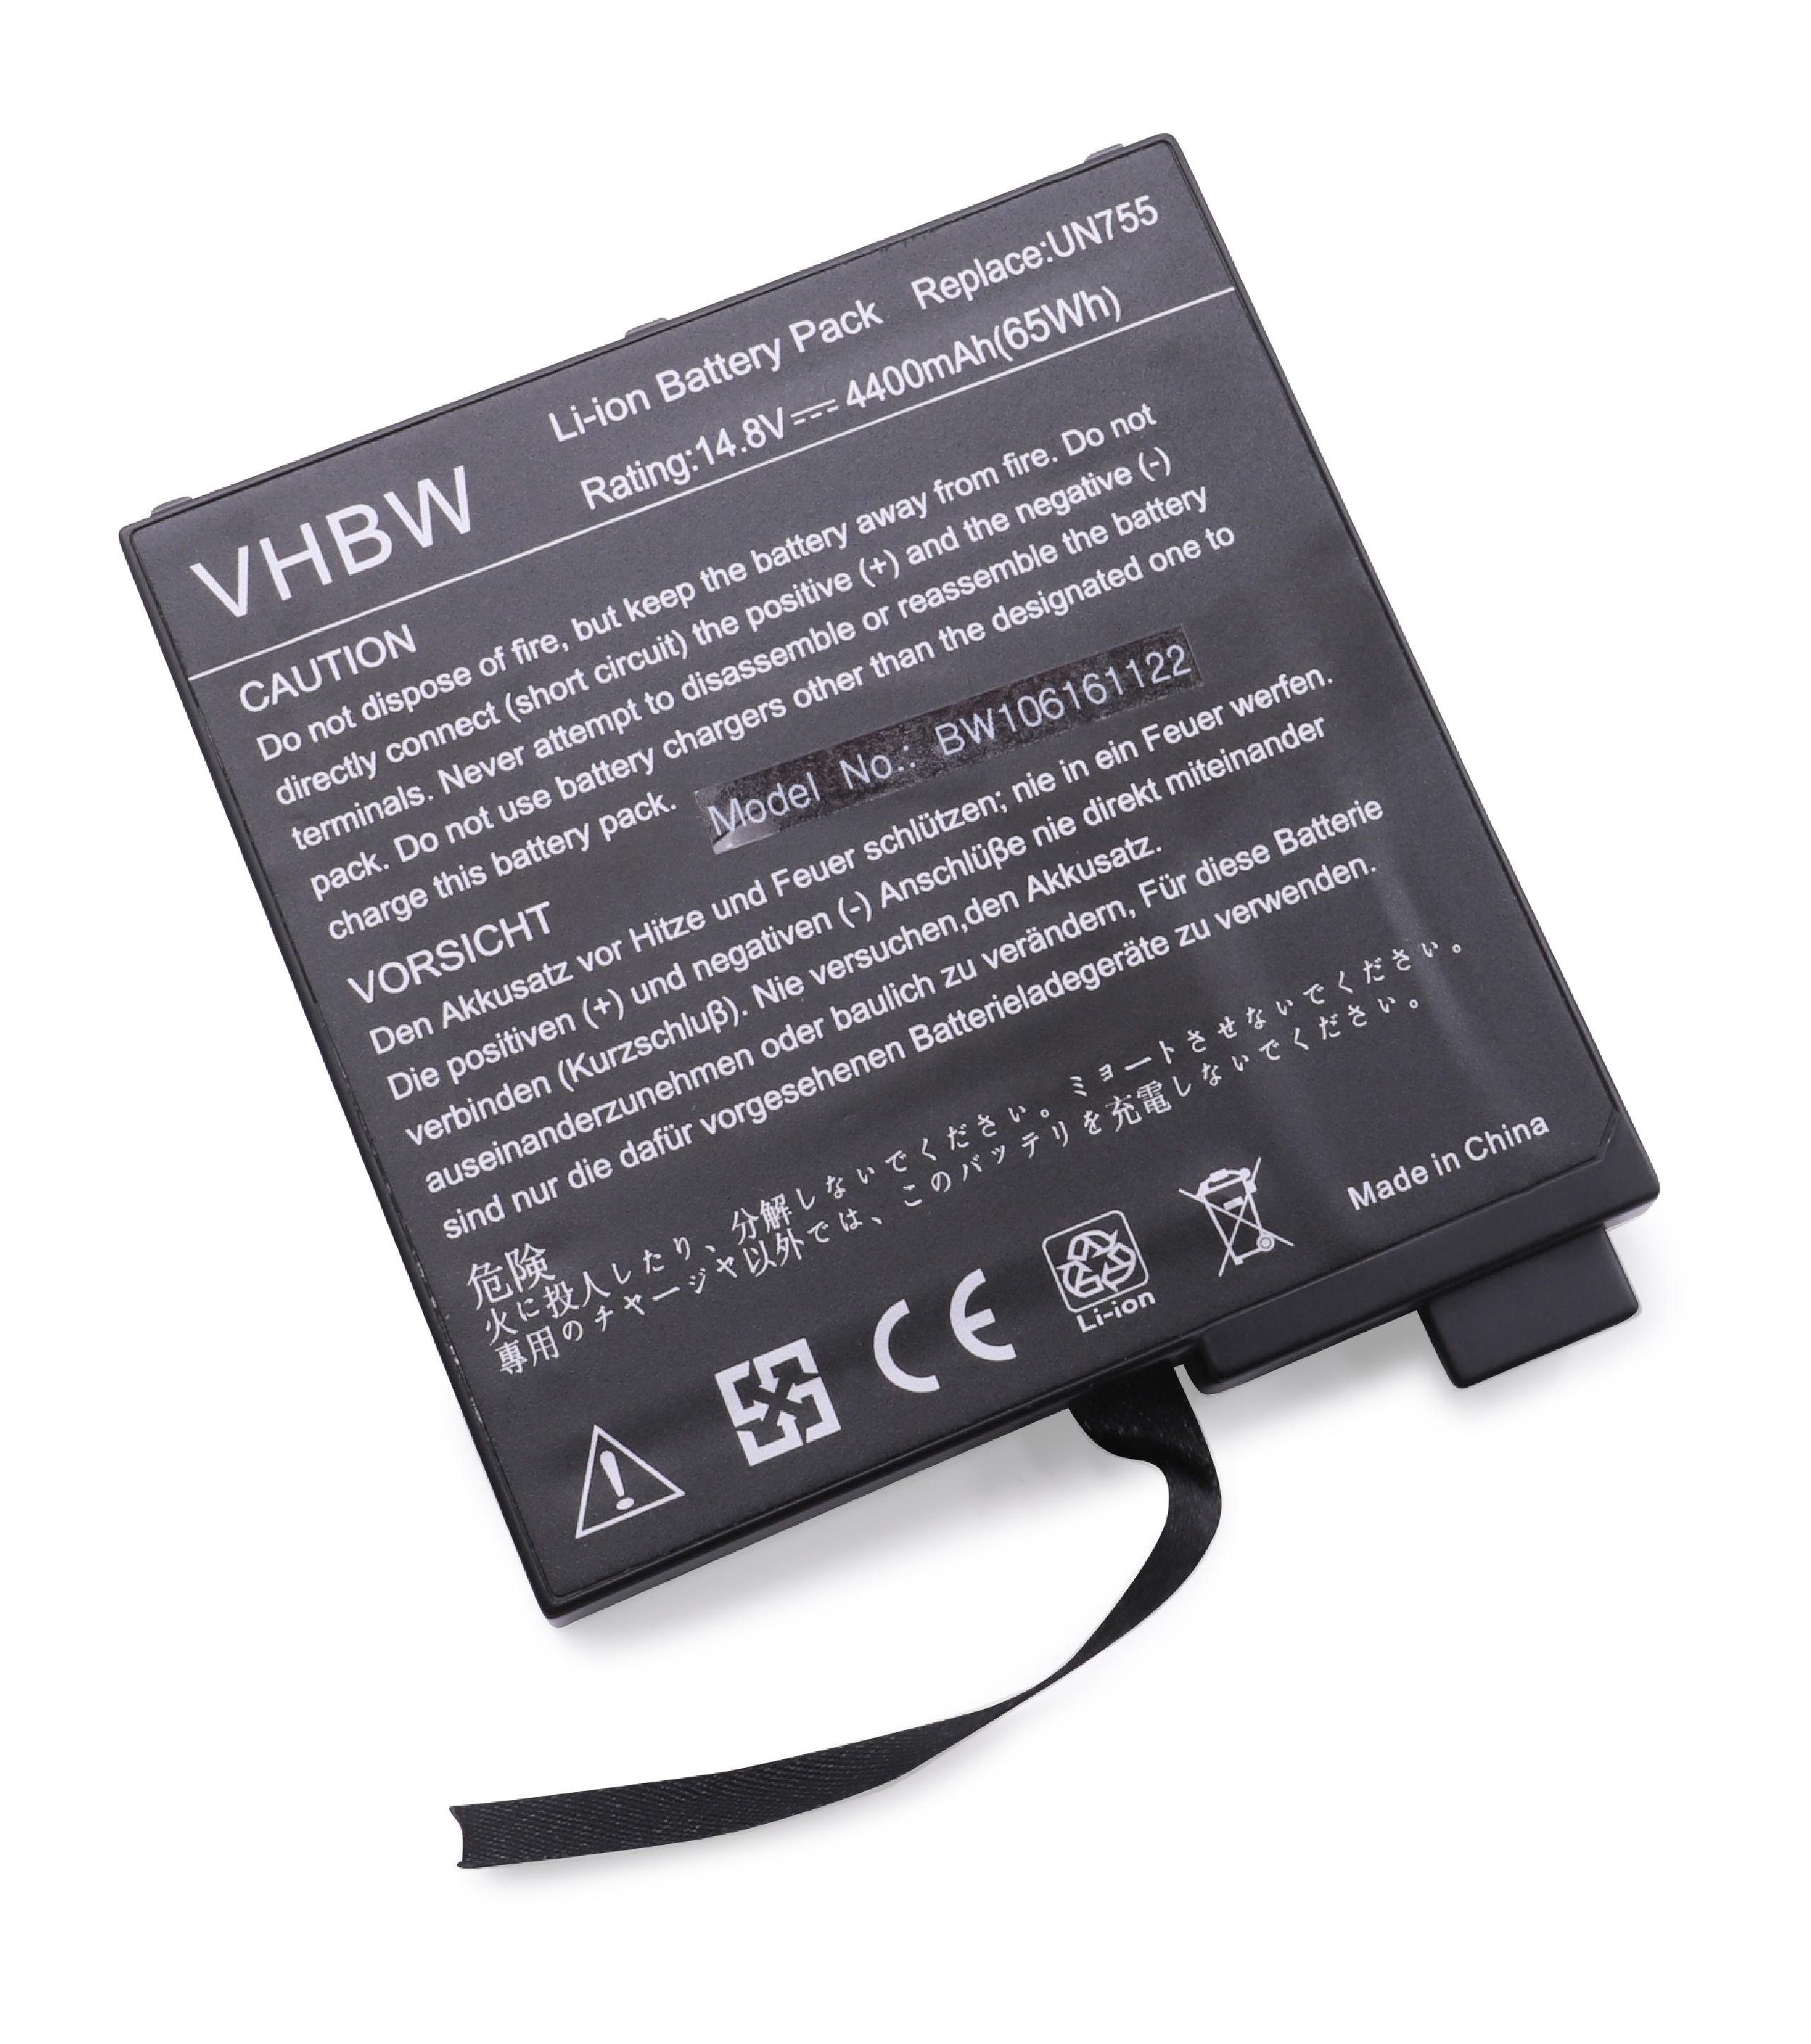 vhbw passend für Packard Bell EasyNote H5, H5310, H5315, H5360, H5530, H5535, H5605 Notebook / Netbook (4400mAh, 14,8V, Li-Ion) Laptop-Akku 4400 mAh